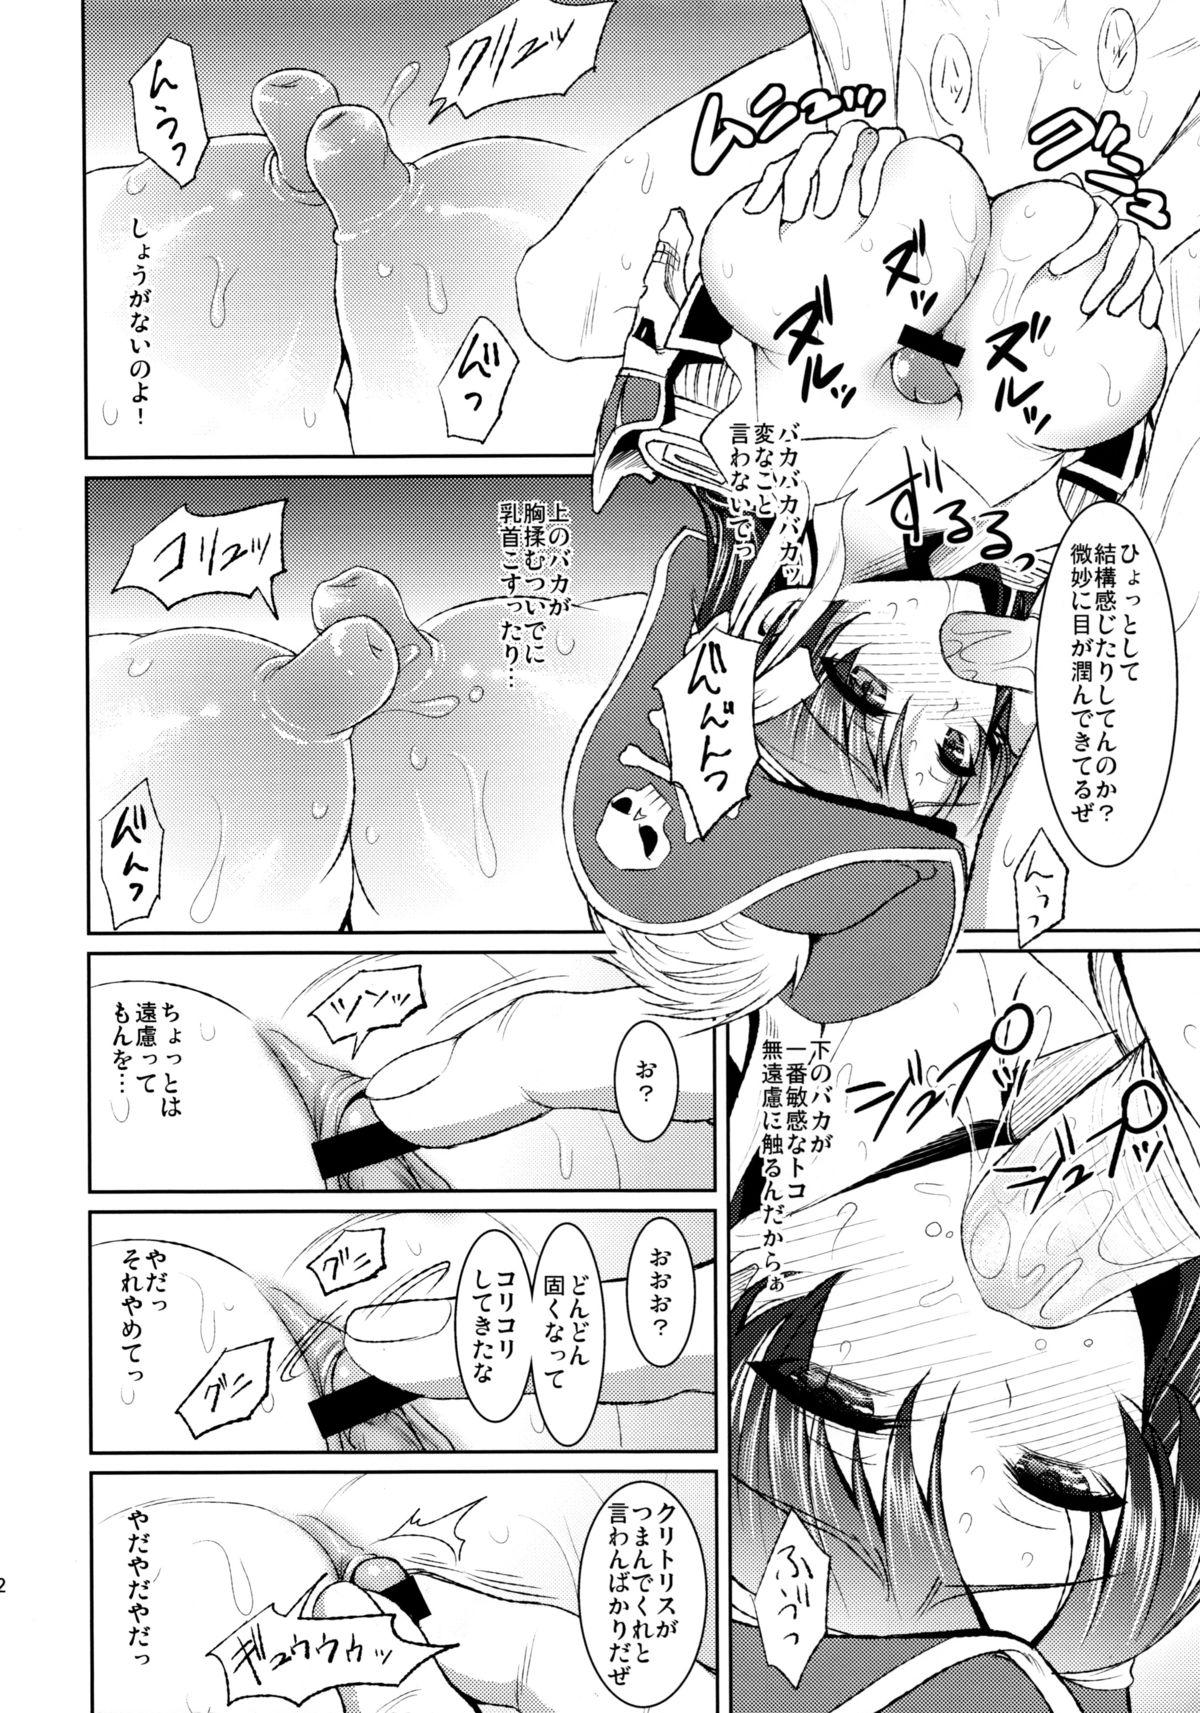 Rola Kaizoku Musume no Gosan - Monster hunter Siririca - Page 11